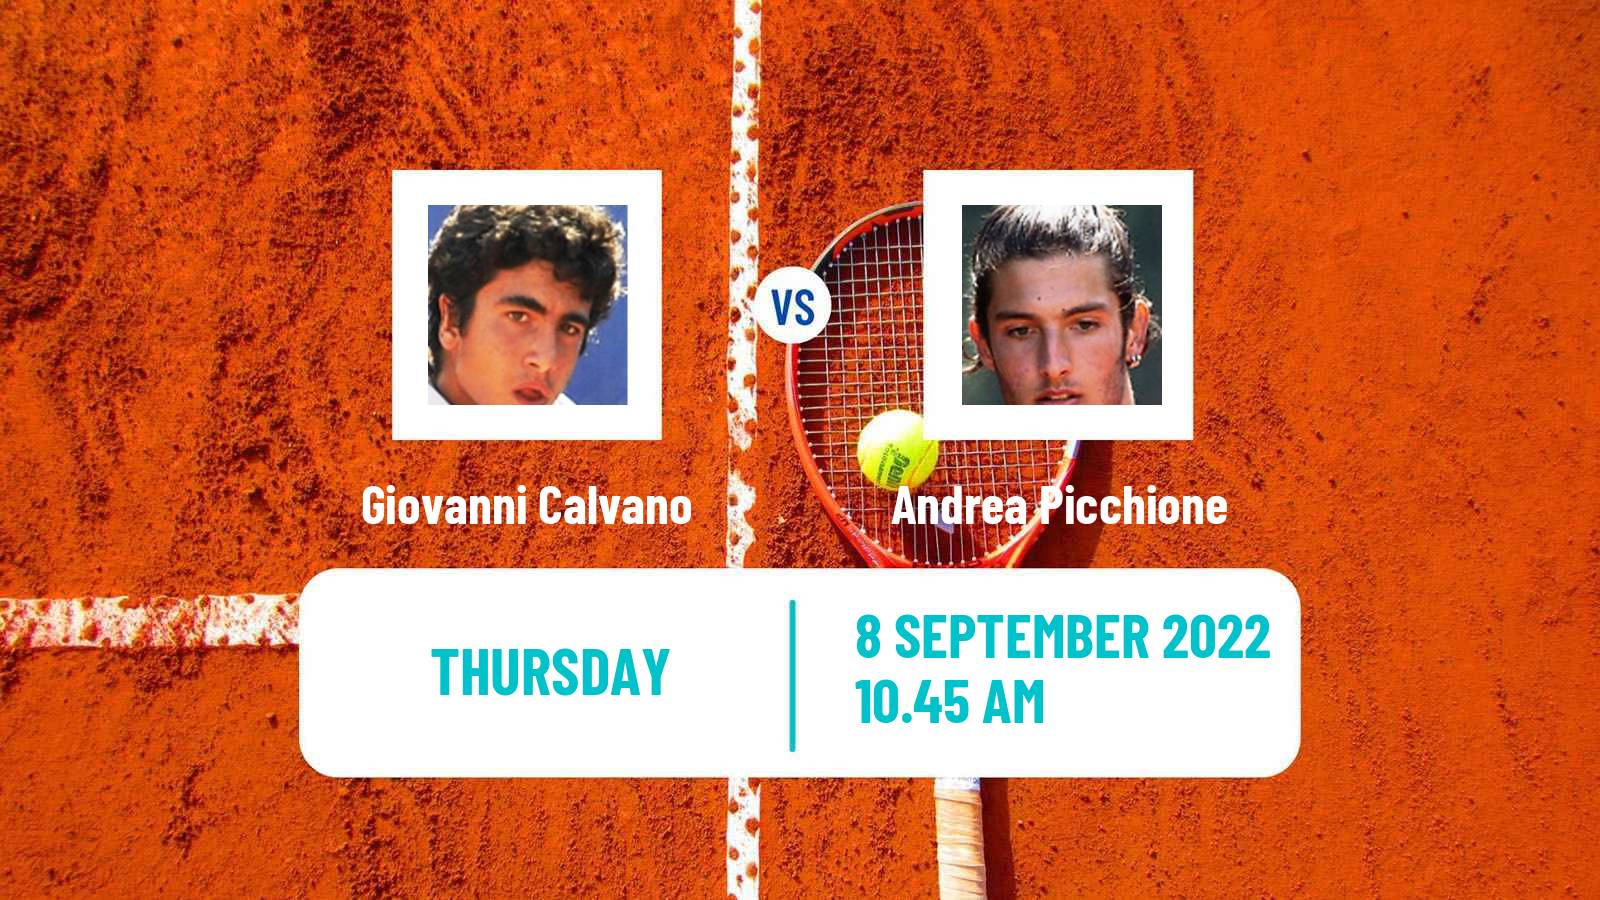 Tennis ITF Tournaments Giovanni Calvano - Andrea Picchione